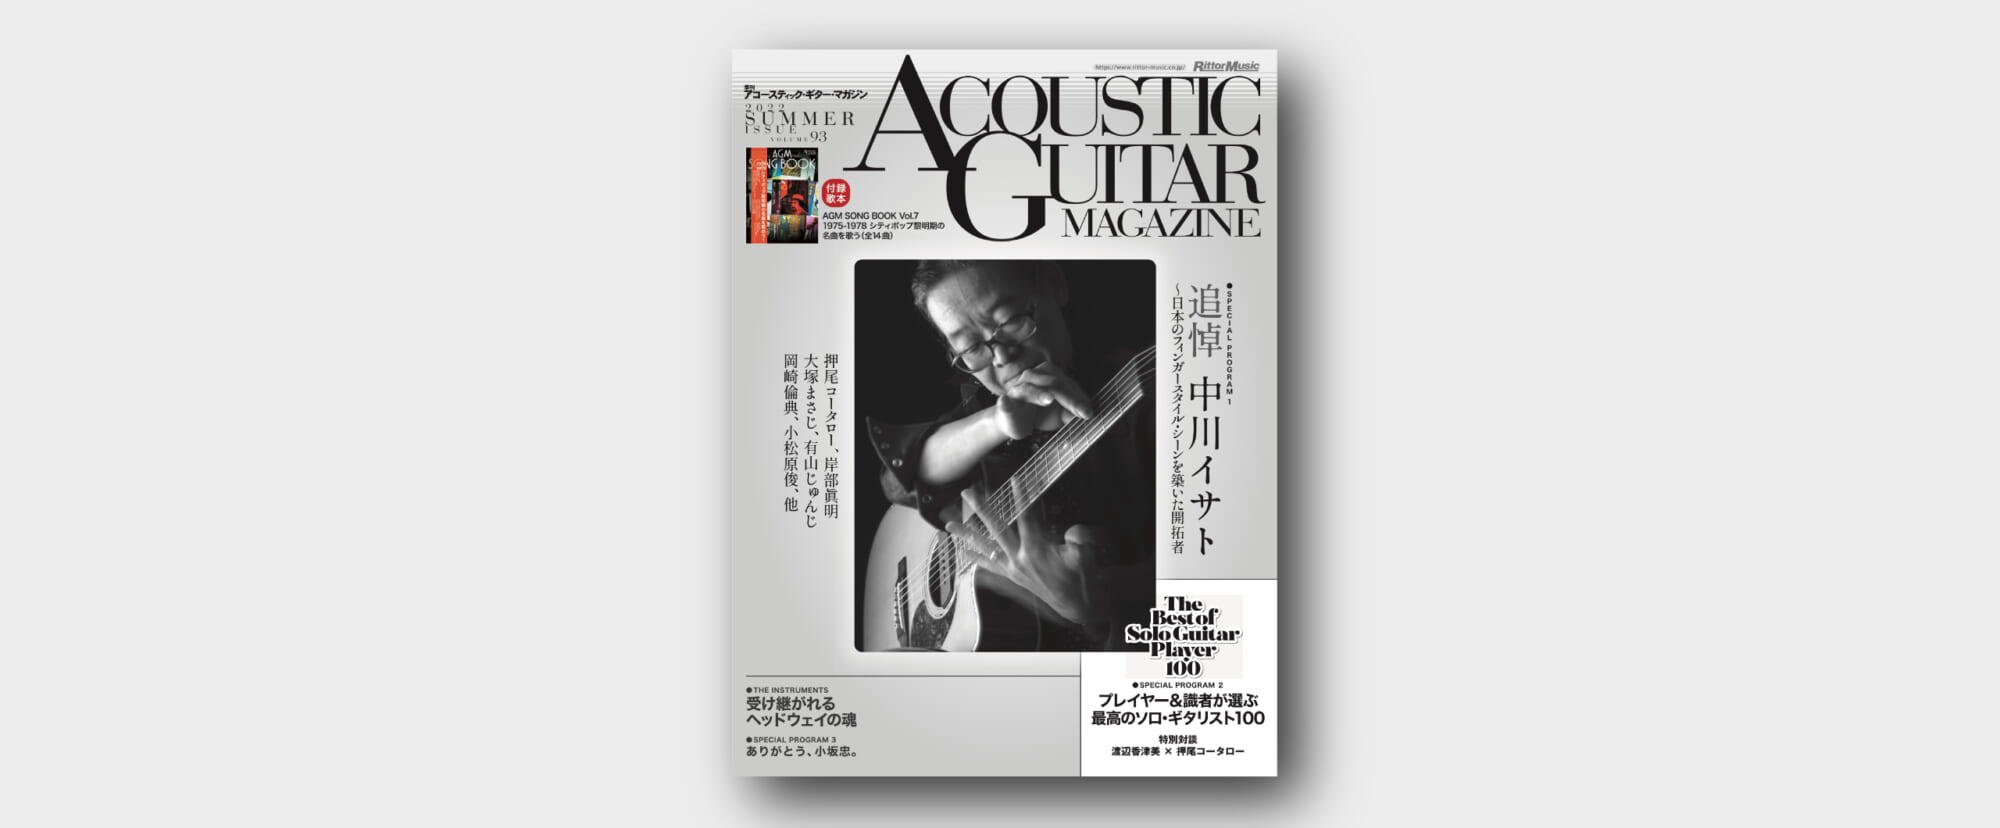 アコースティック・ギター・マガジン最新号は 中川イサト追悼特集、最高のソロ・ギタリスト100